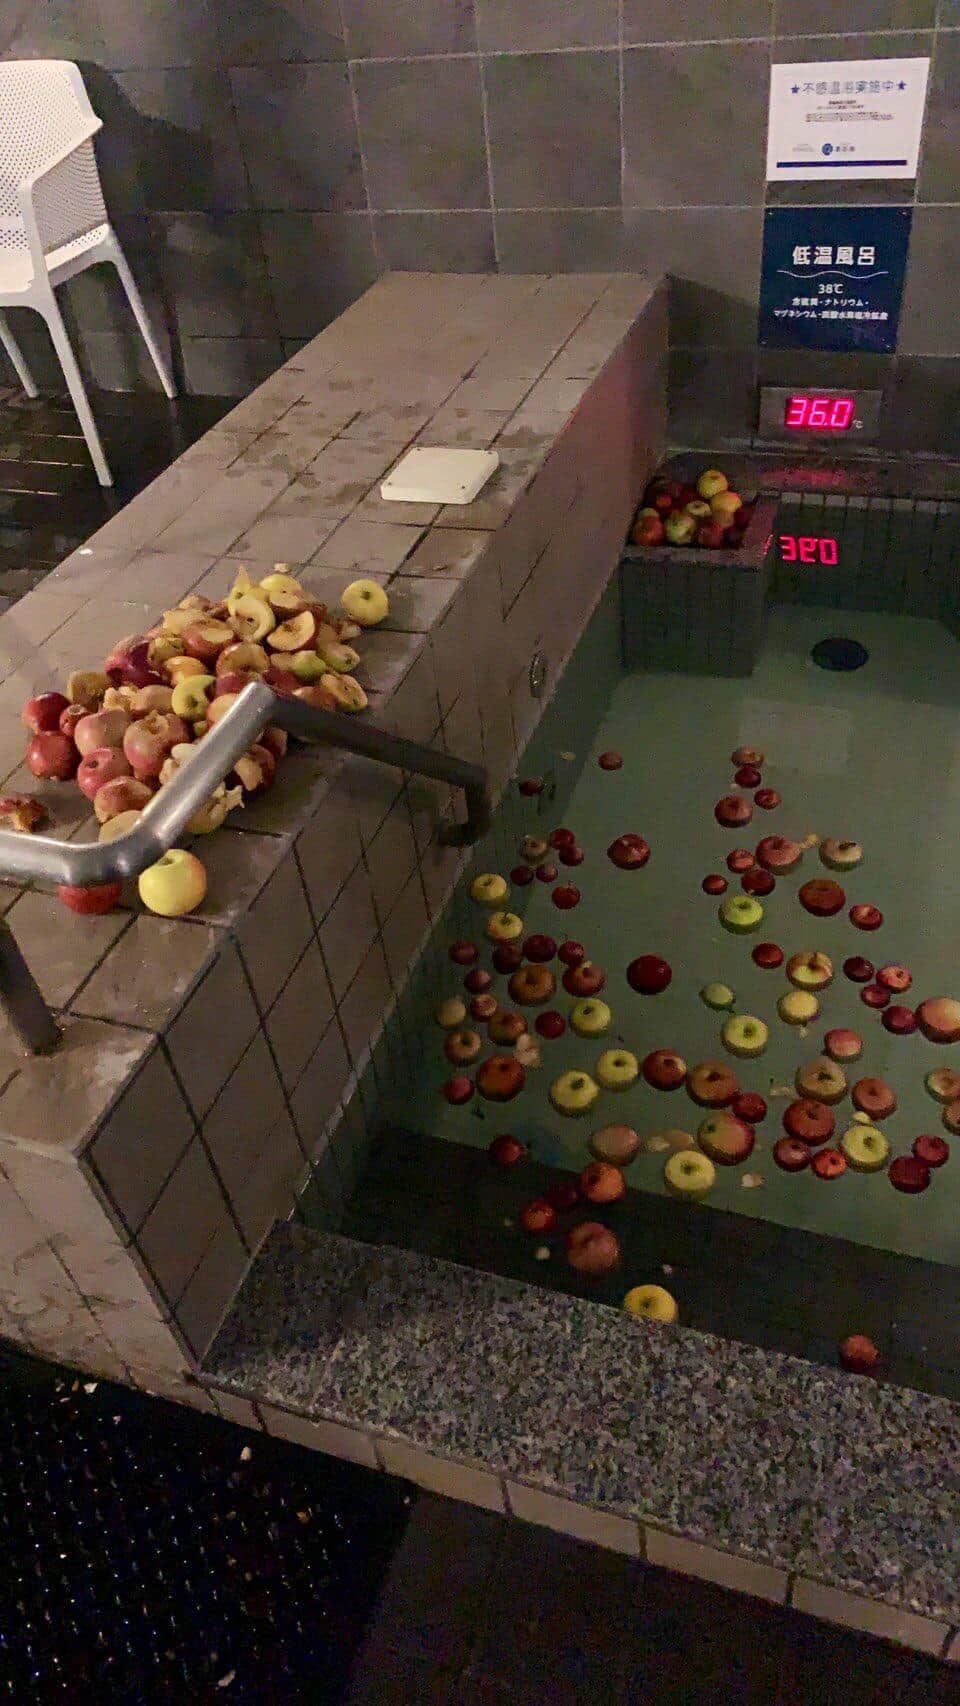 男性浴槽には砕けたりんごが浮かぶ